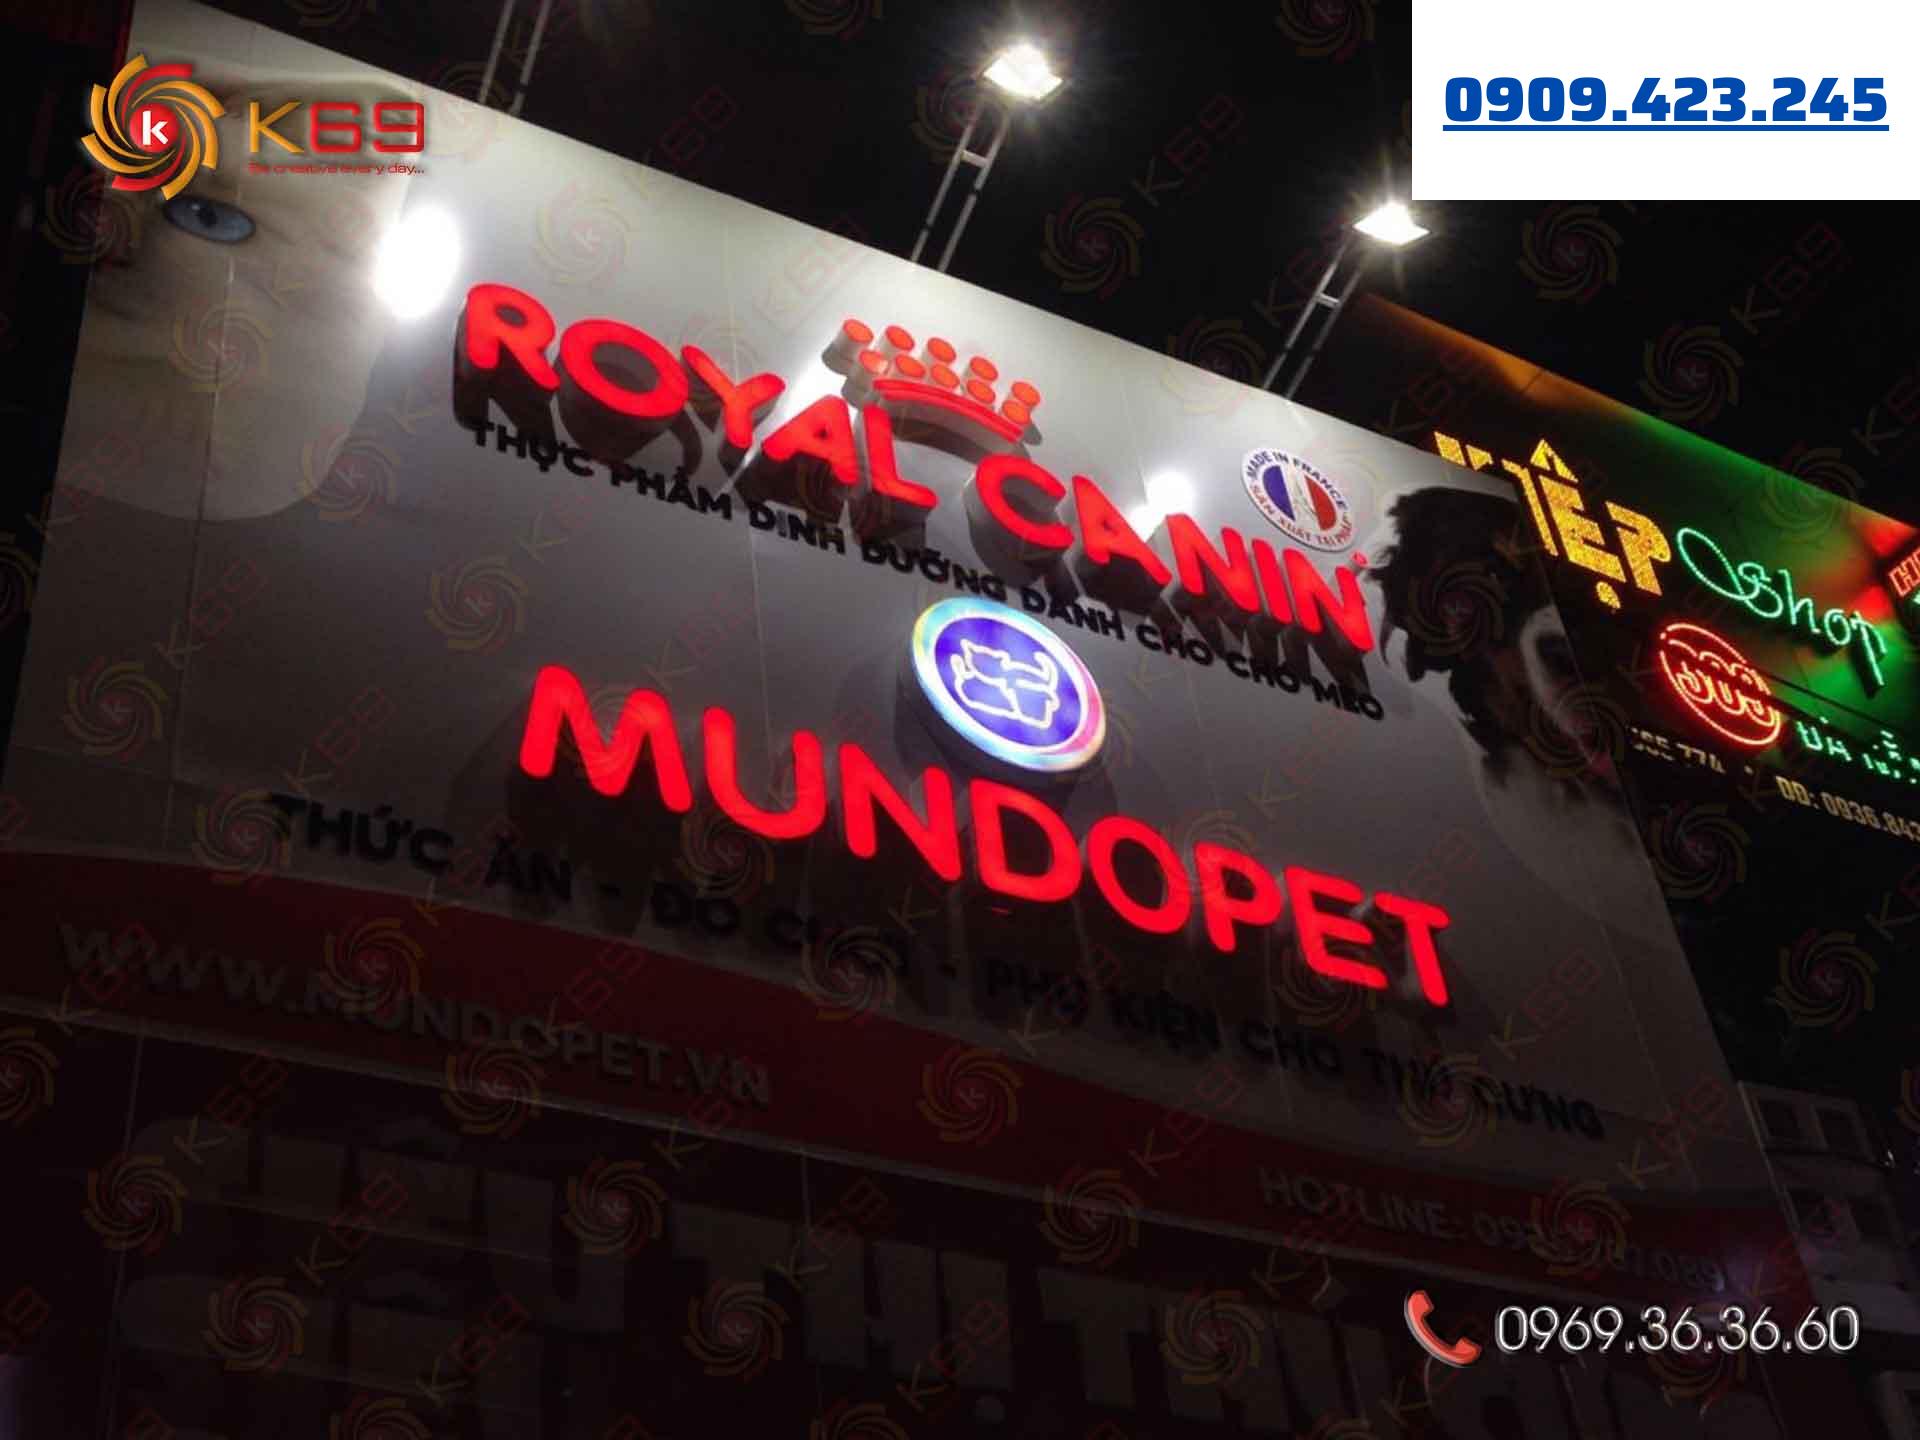 Mẫu bảng hiệu shop thú cưng Mundopet đẹp tại K69adv